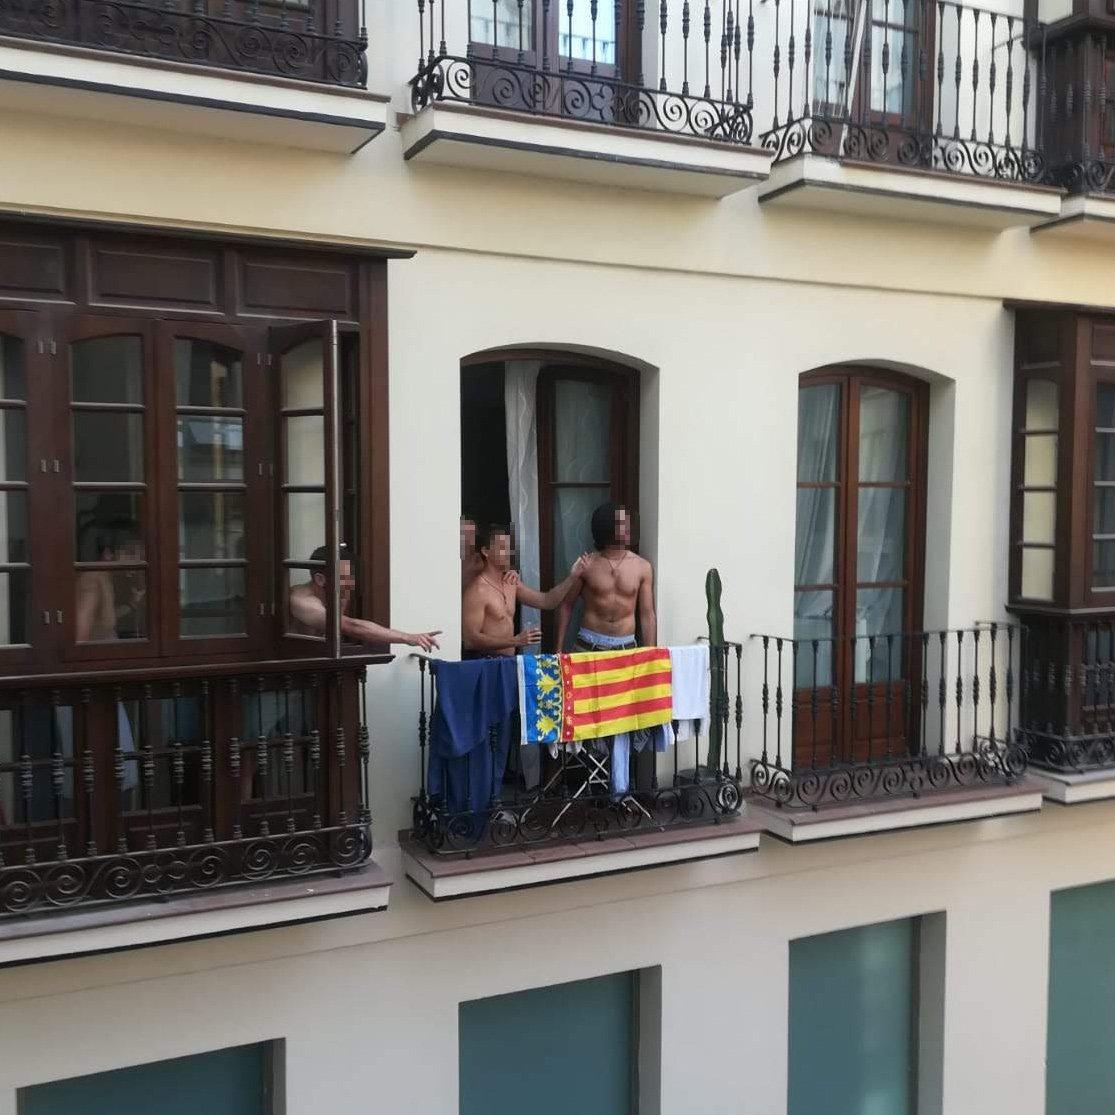 Imagen del balcón. @Vecinosmalaga